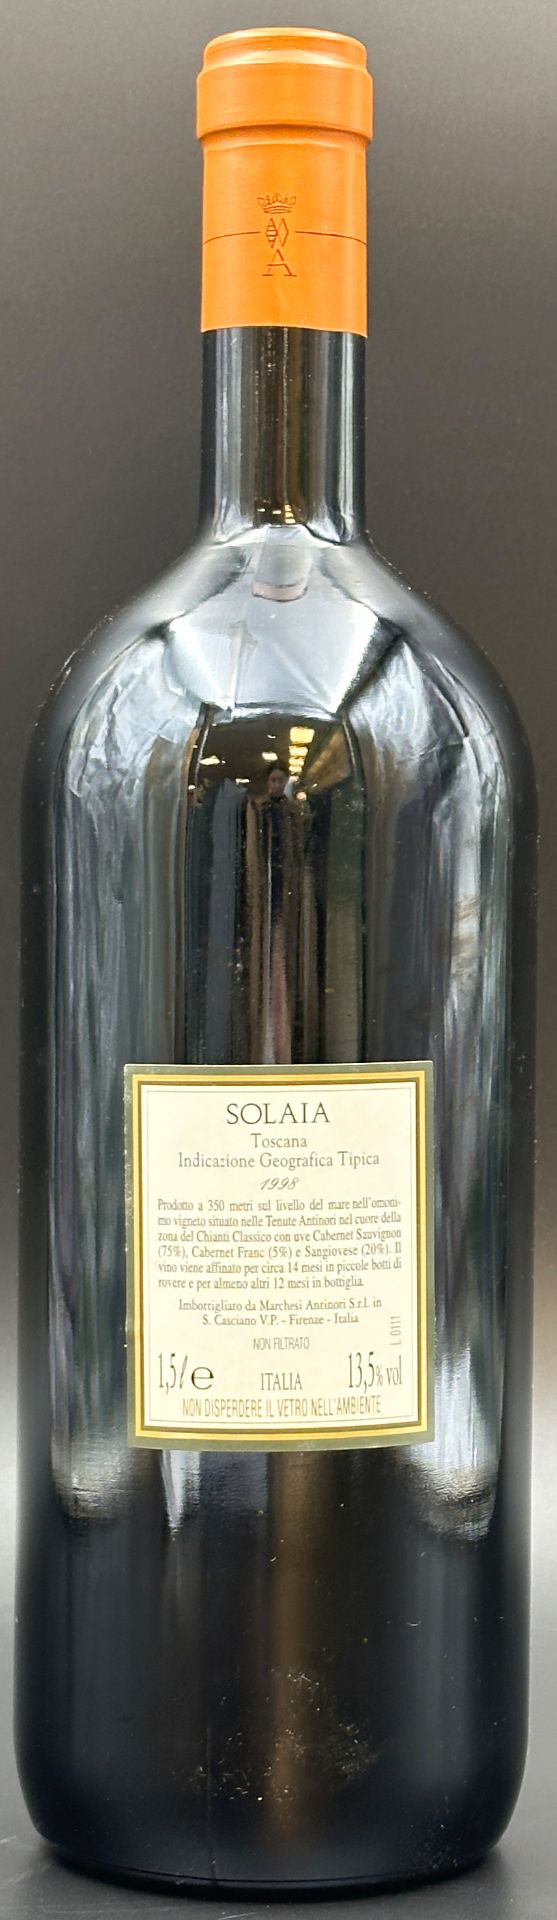 SOLAIA. Marchesi Antinori. 1 Magnum Flasche Rotwein. 1998. - Bild 4 aus 11